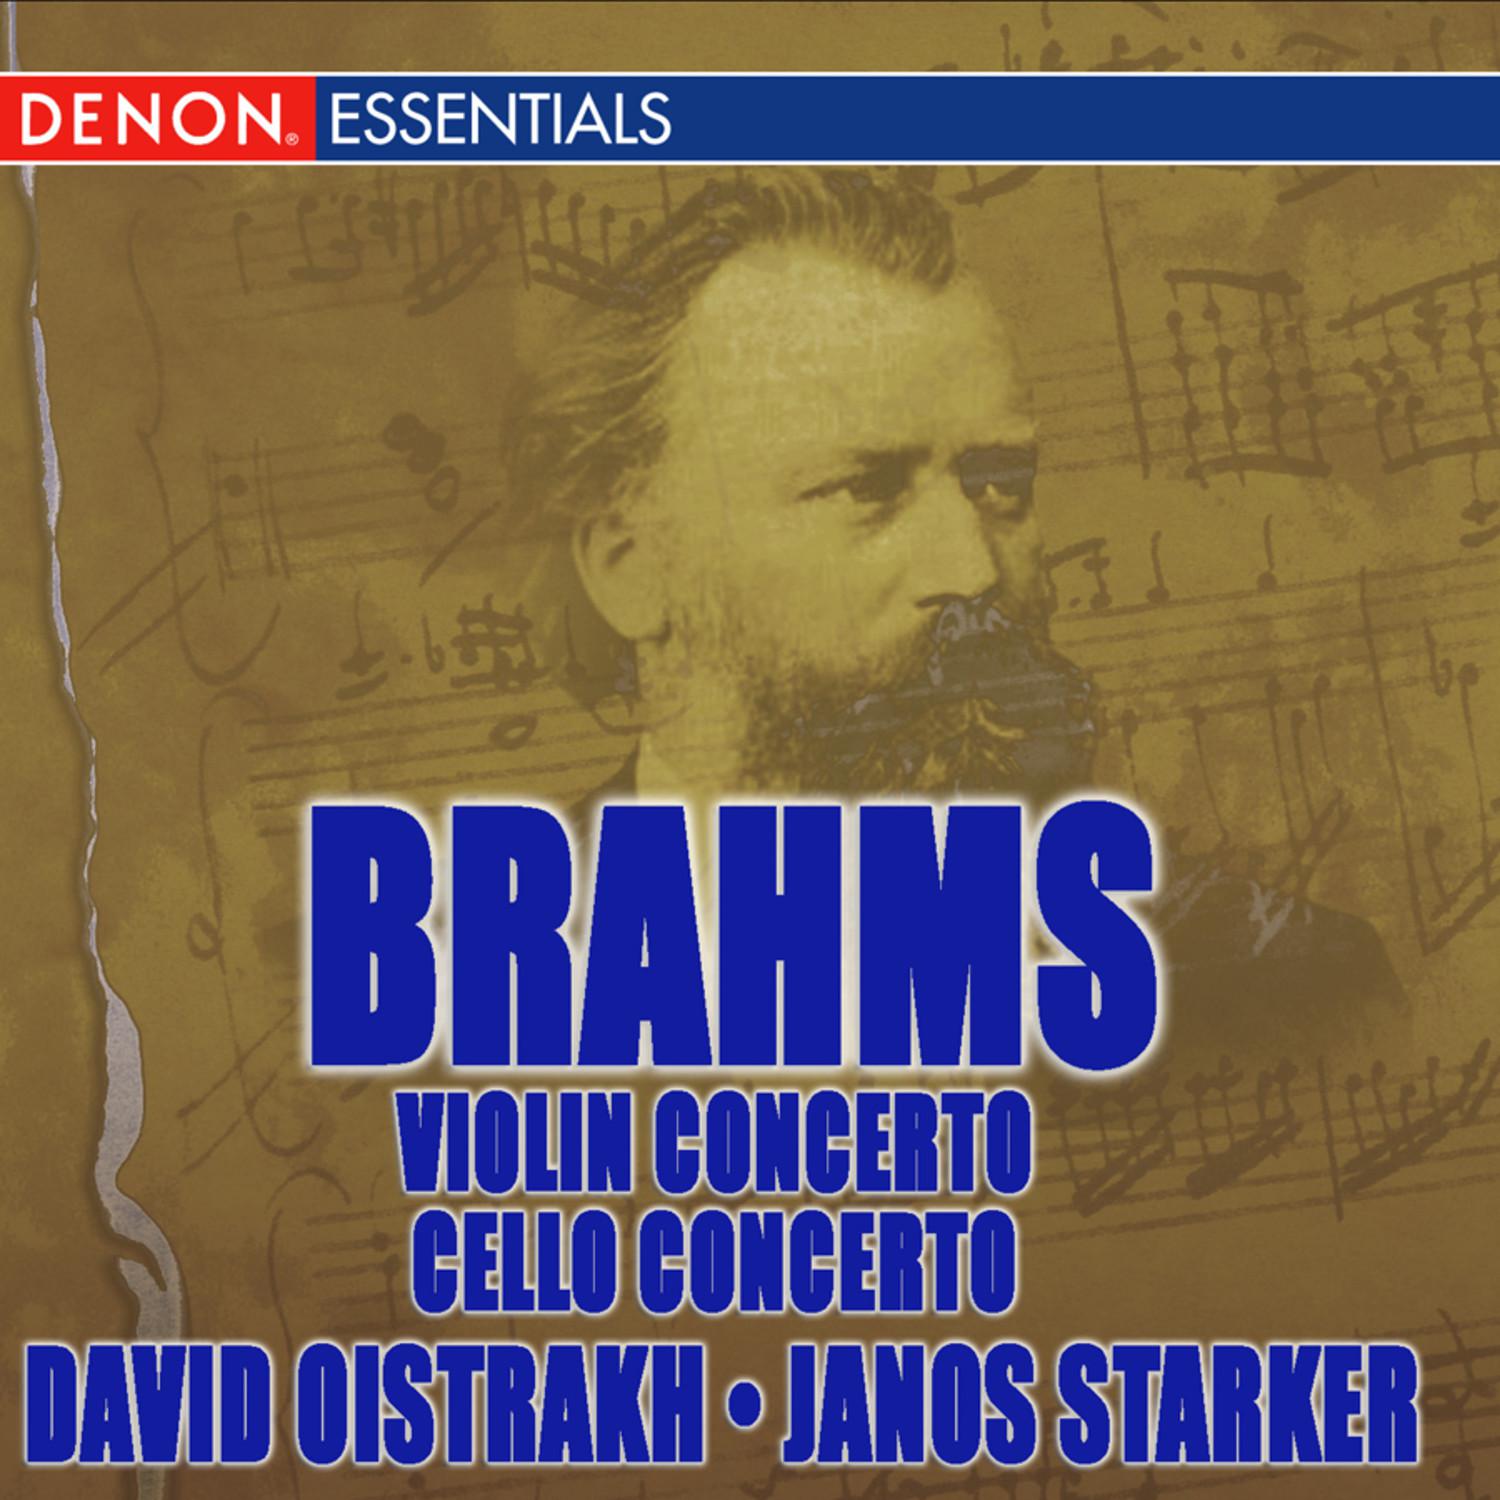 Concerto for Violin & Orchestra in D Major, Op. 77: II. Adagio